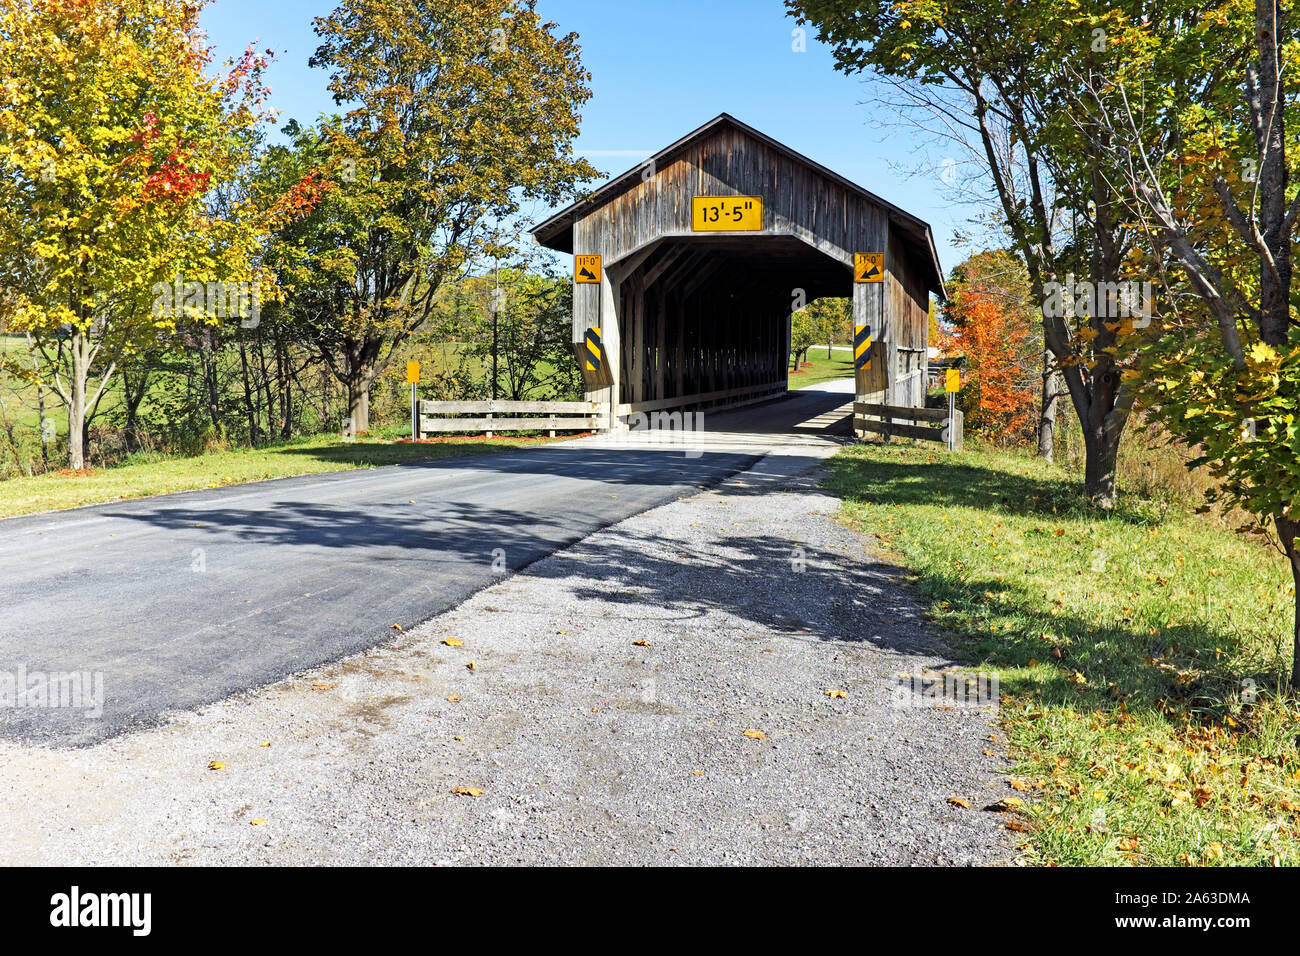 Le Caine Road Bridge, l'un des nombreux ponts couverts en bois dans le nord-est de l'Ohio, est le premier pont en treillis Pratt en Ohio et situé dans le canton de Pierpont. Banque D'Images